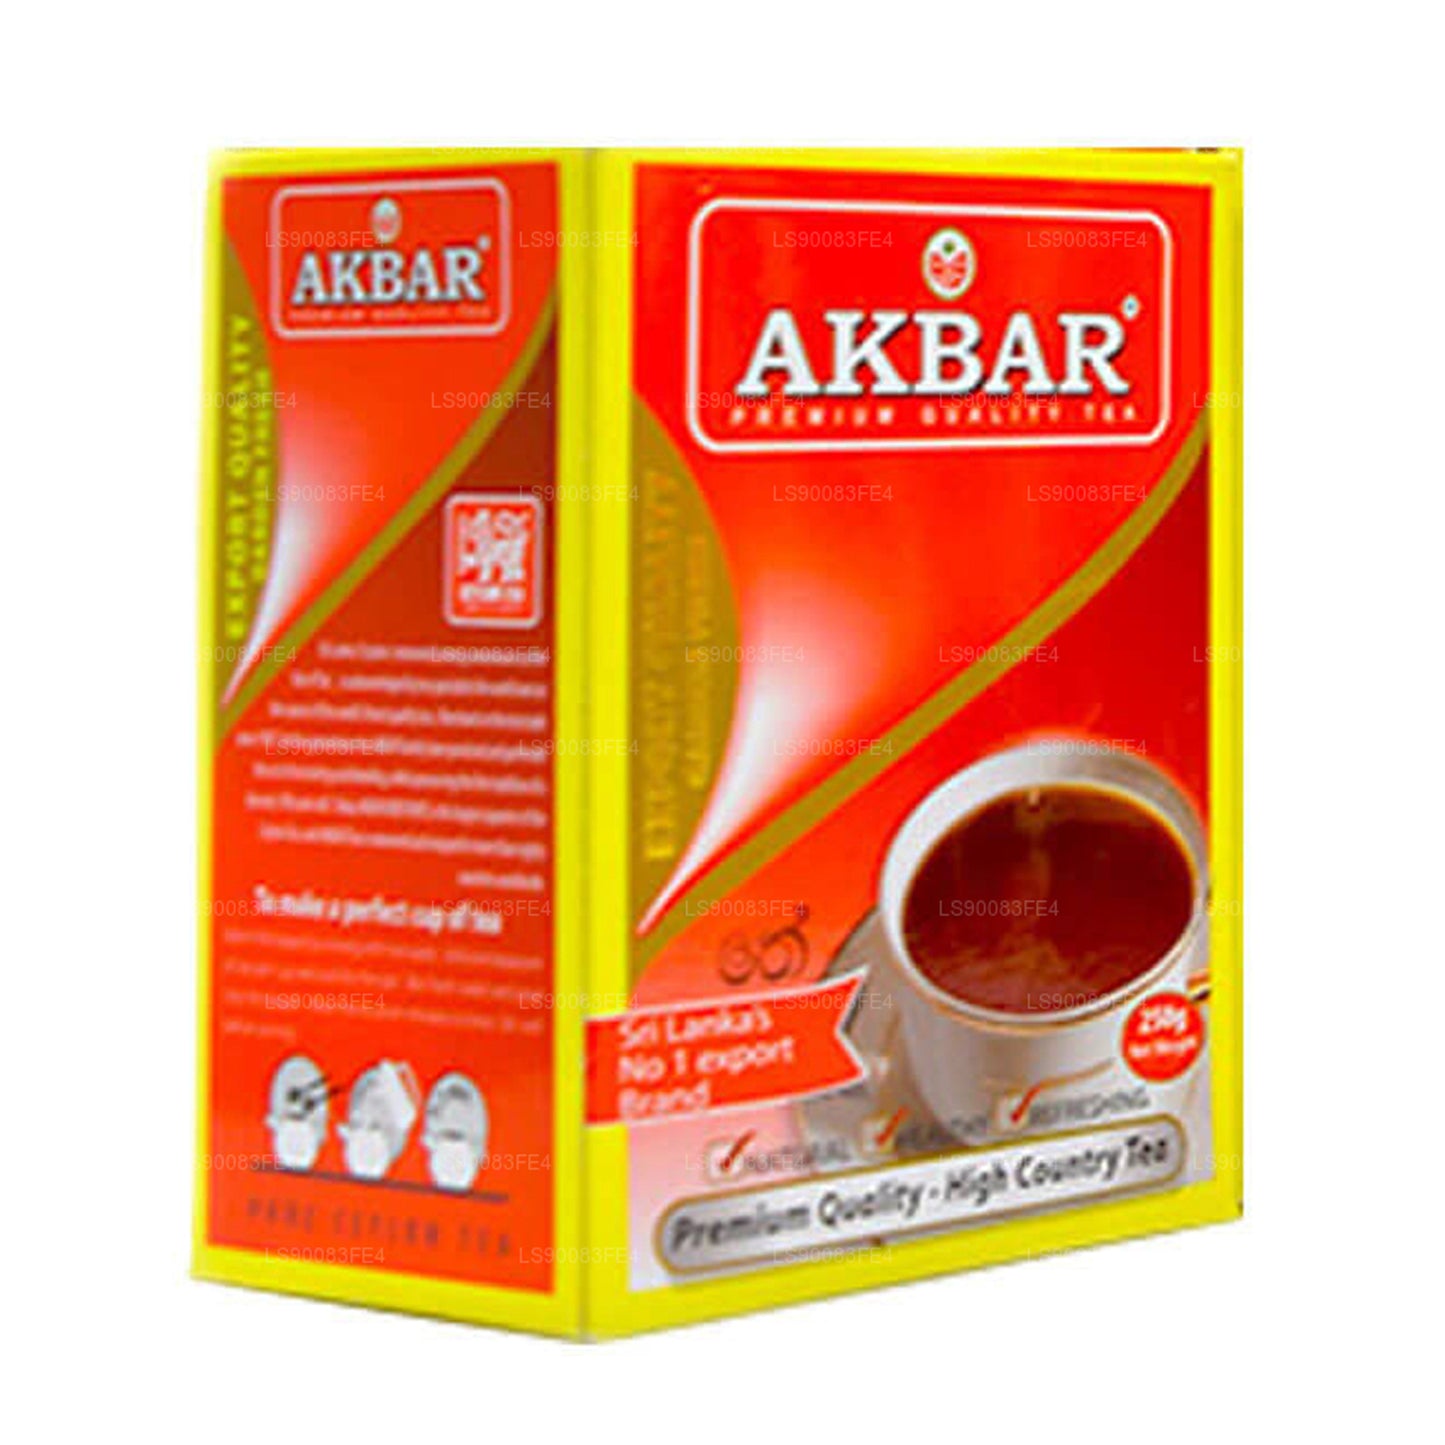 Thé noir Akbar de qualité supérieure (250g)